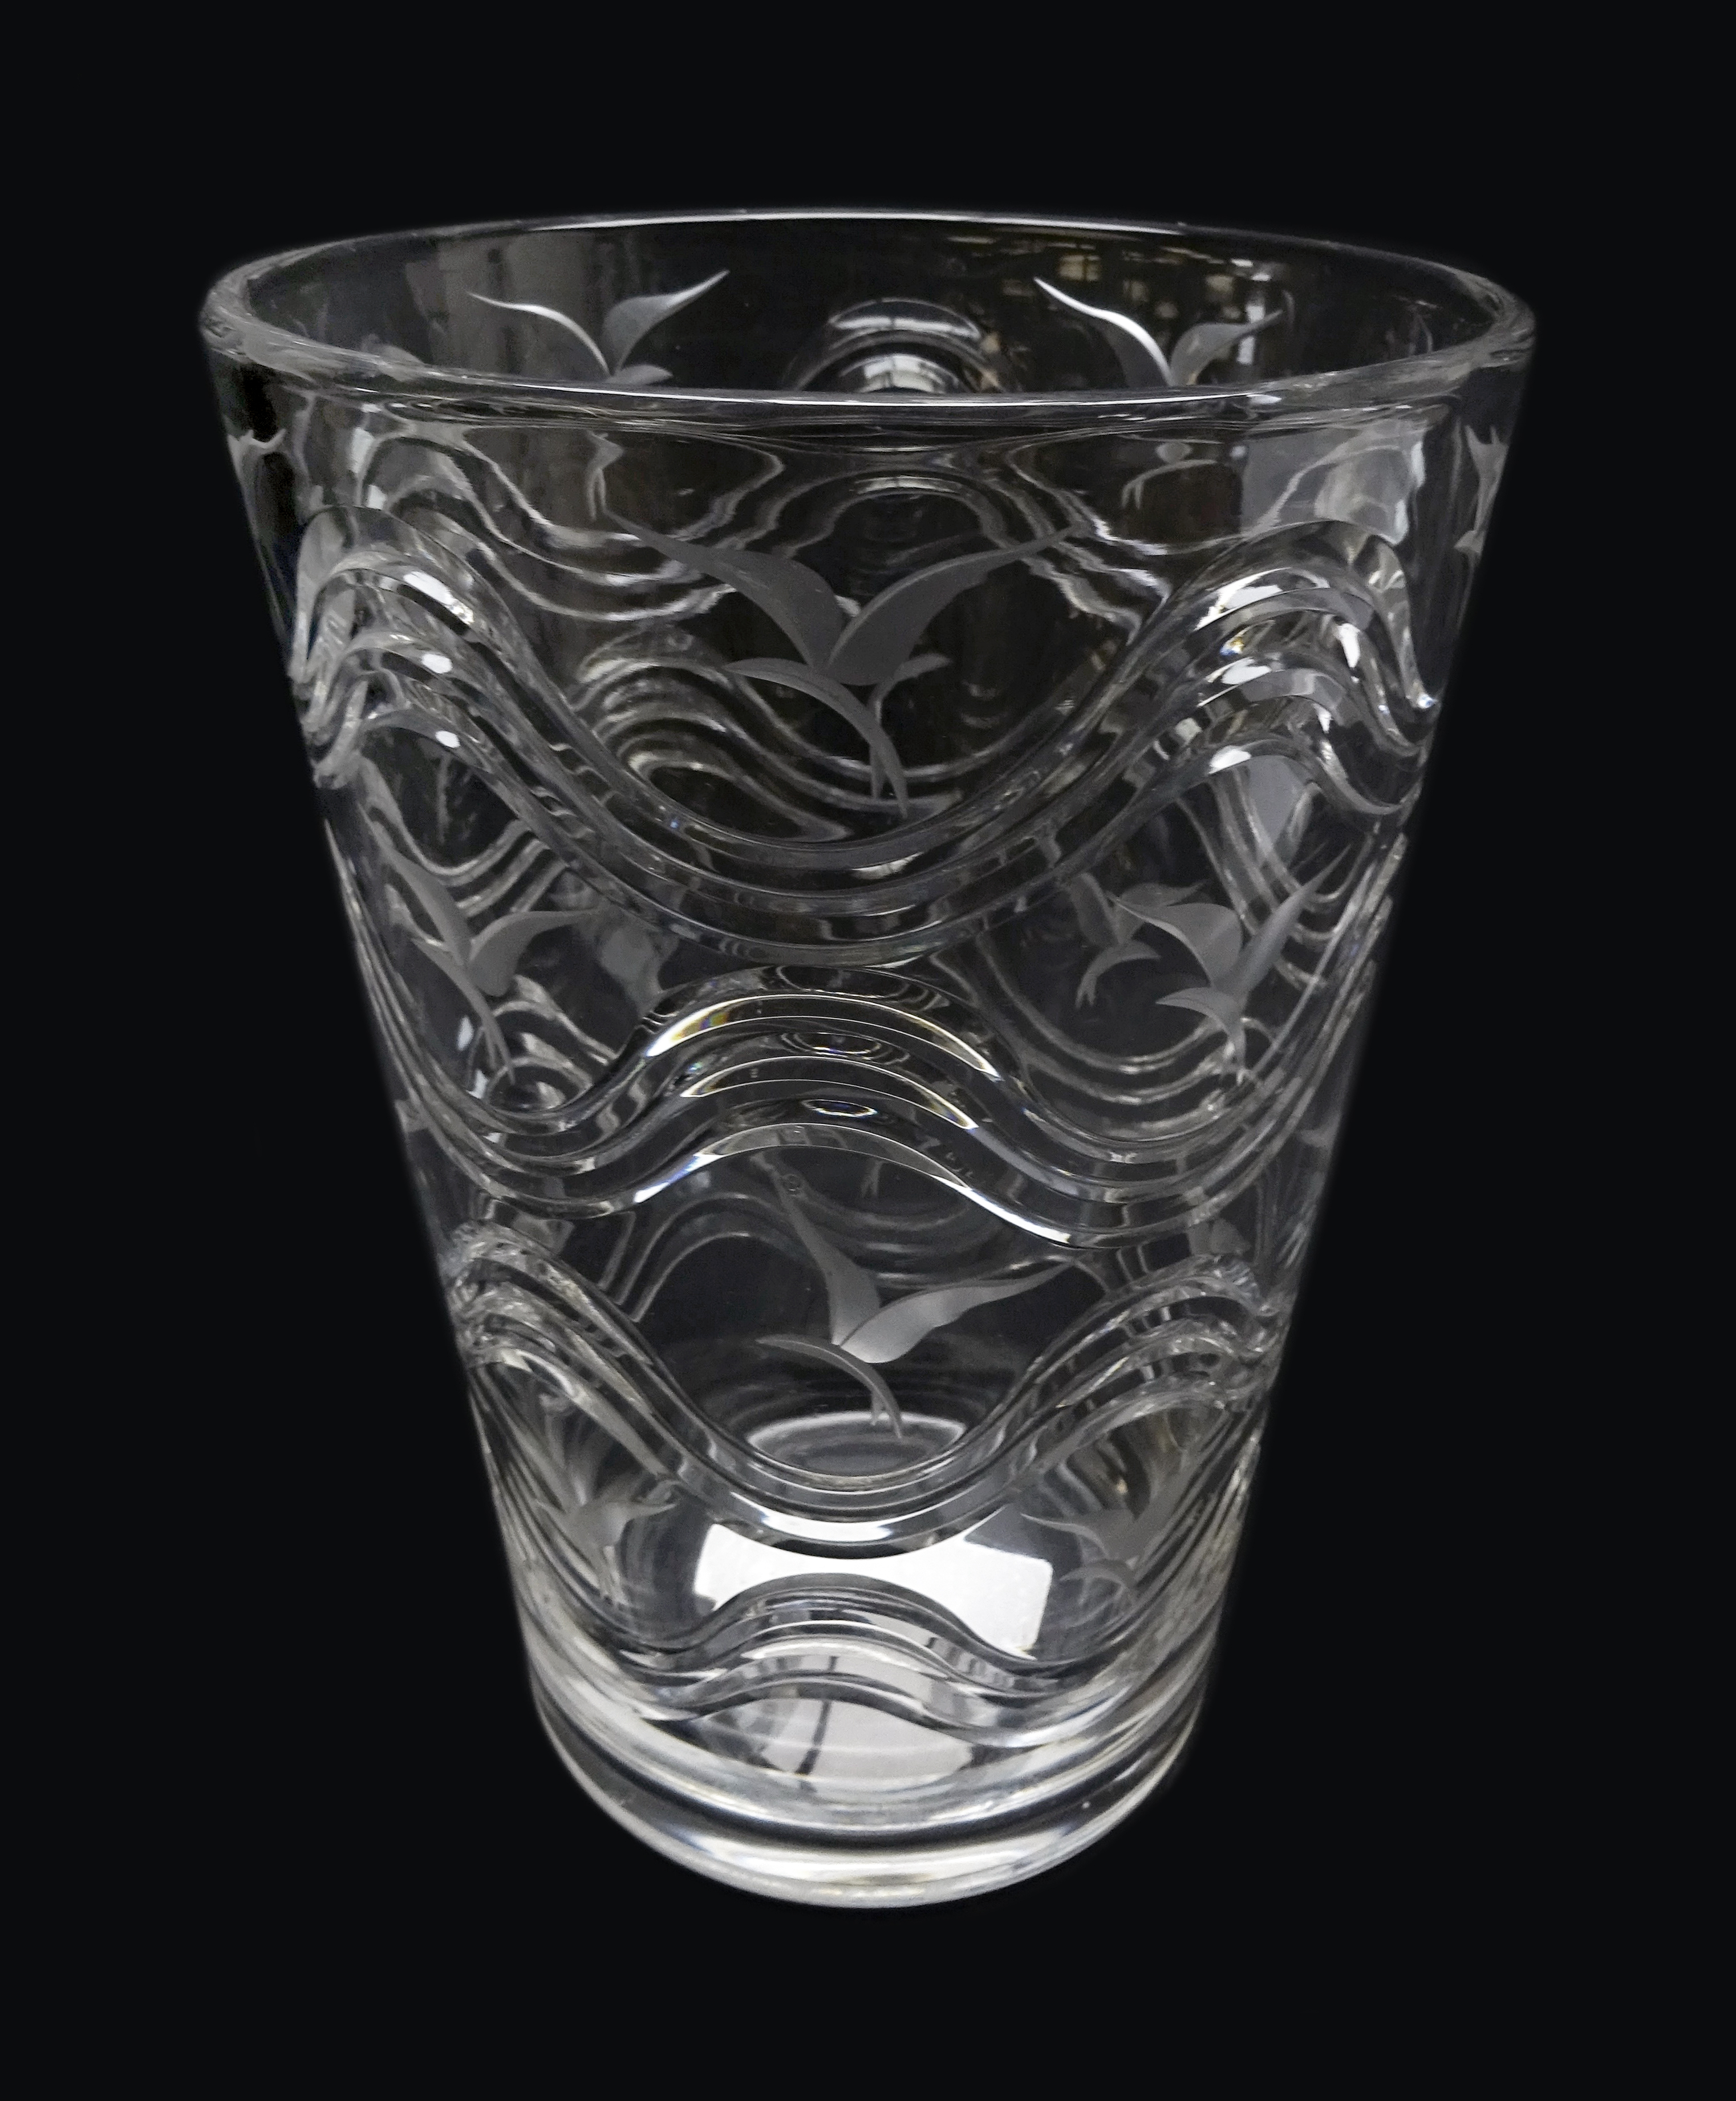 Stuart clear crystal vase designed by H. R.